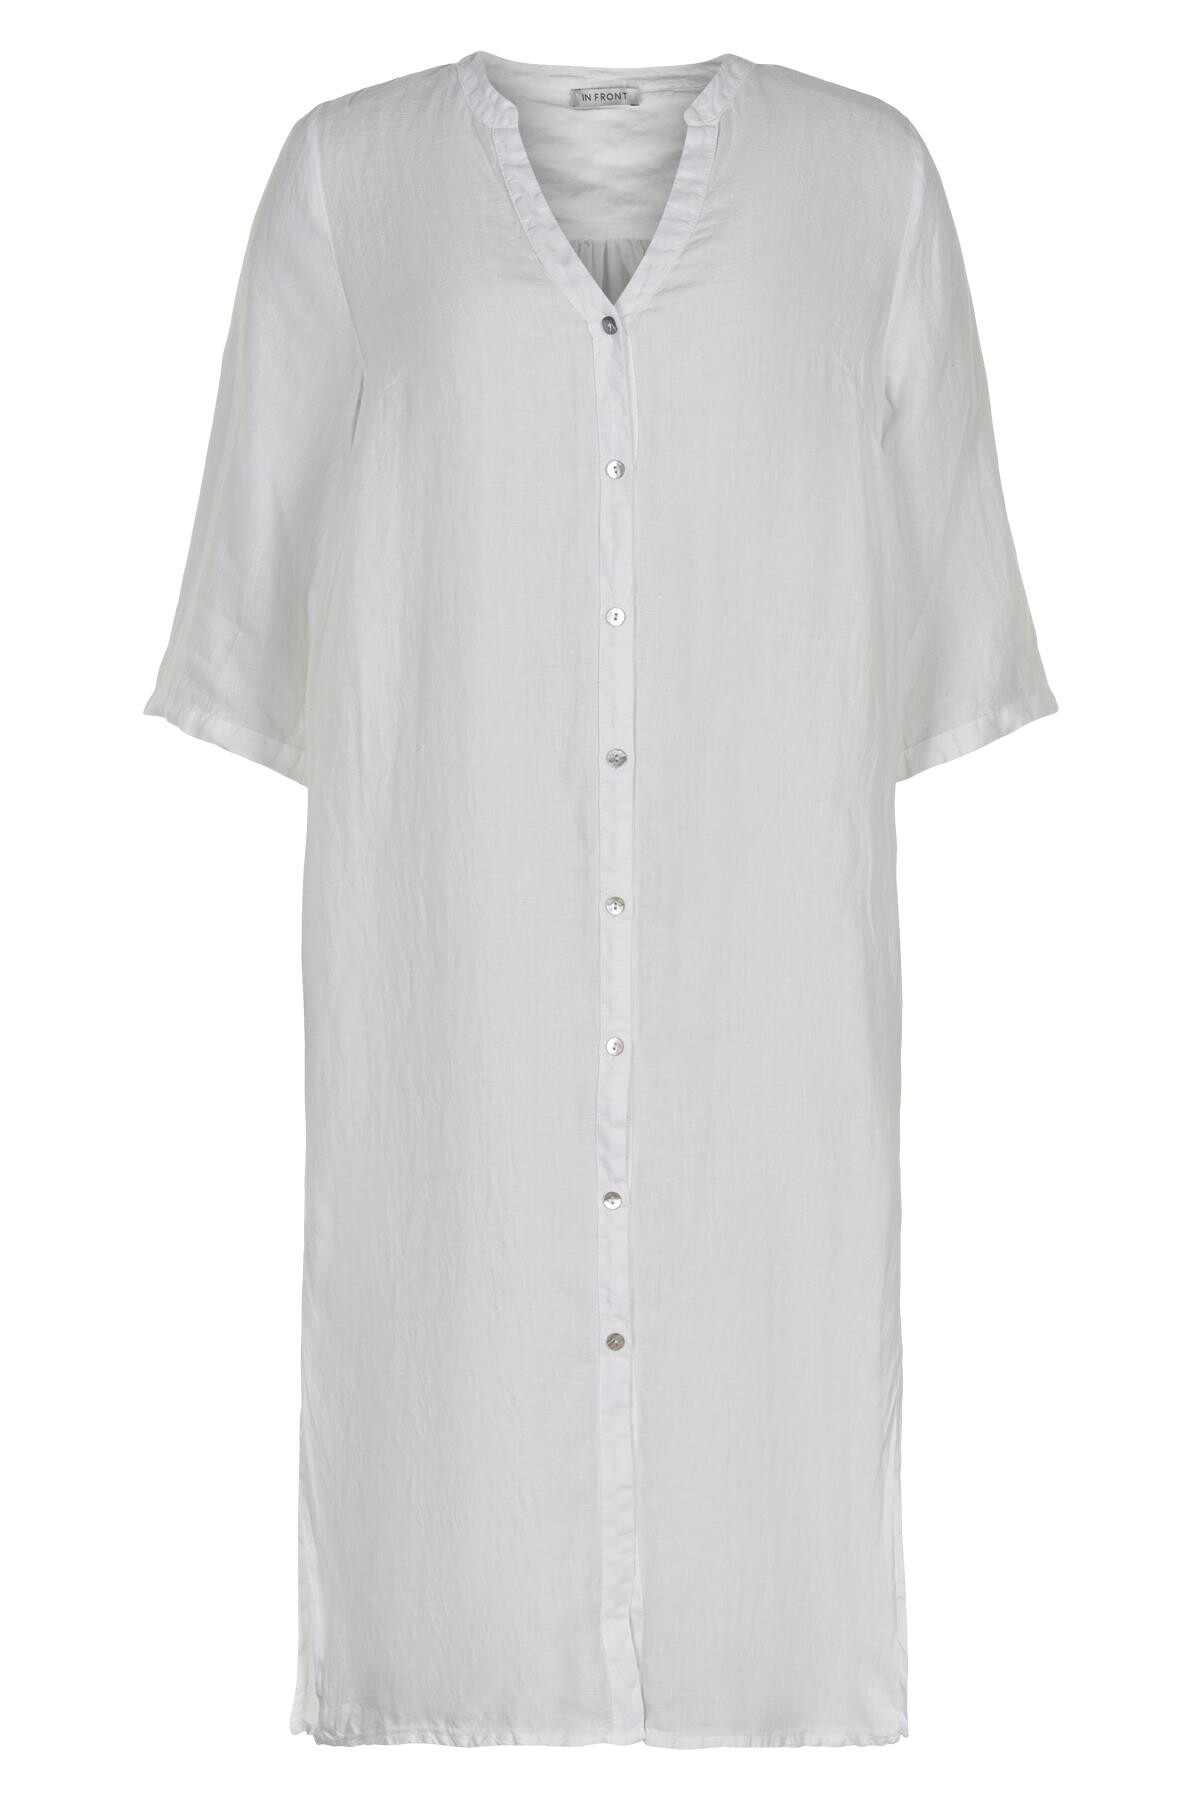 Se IN FRONT Lino Lang Skjortekjole, Farve: White, Størrelse: L, Dame hos Infront Women